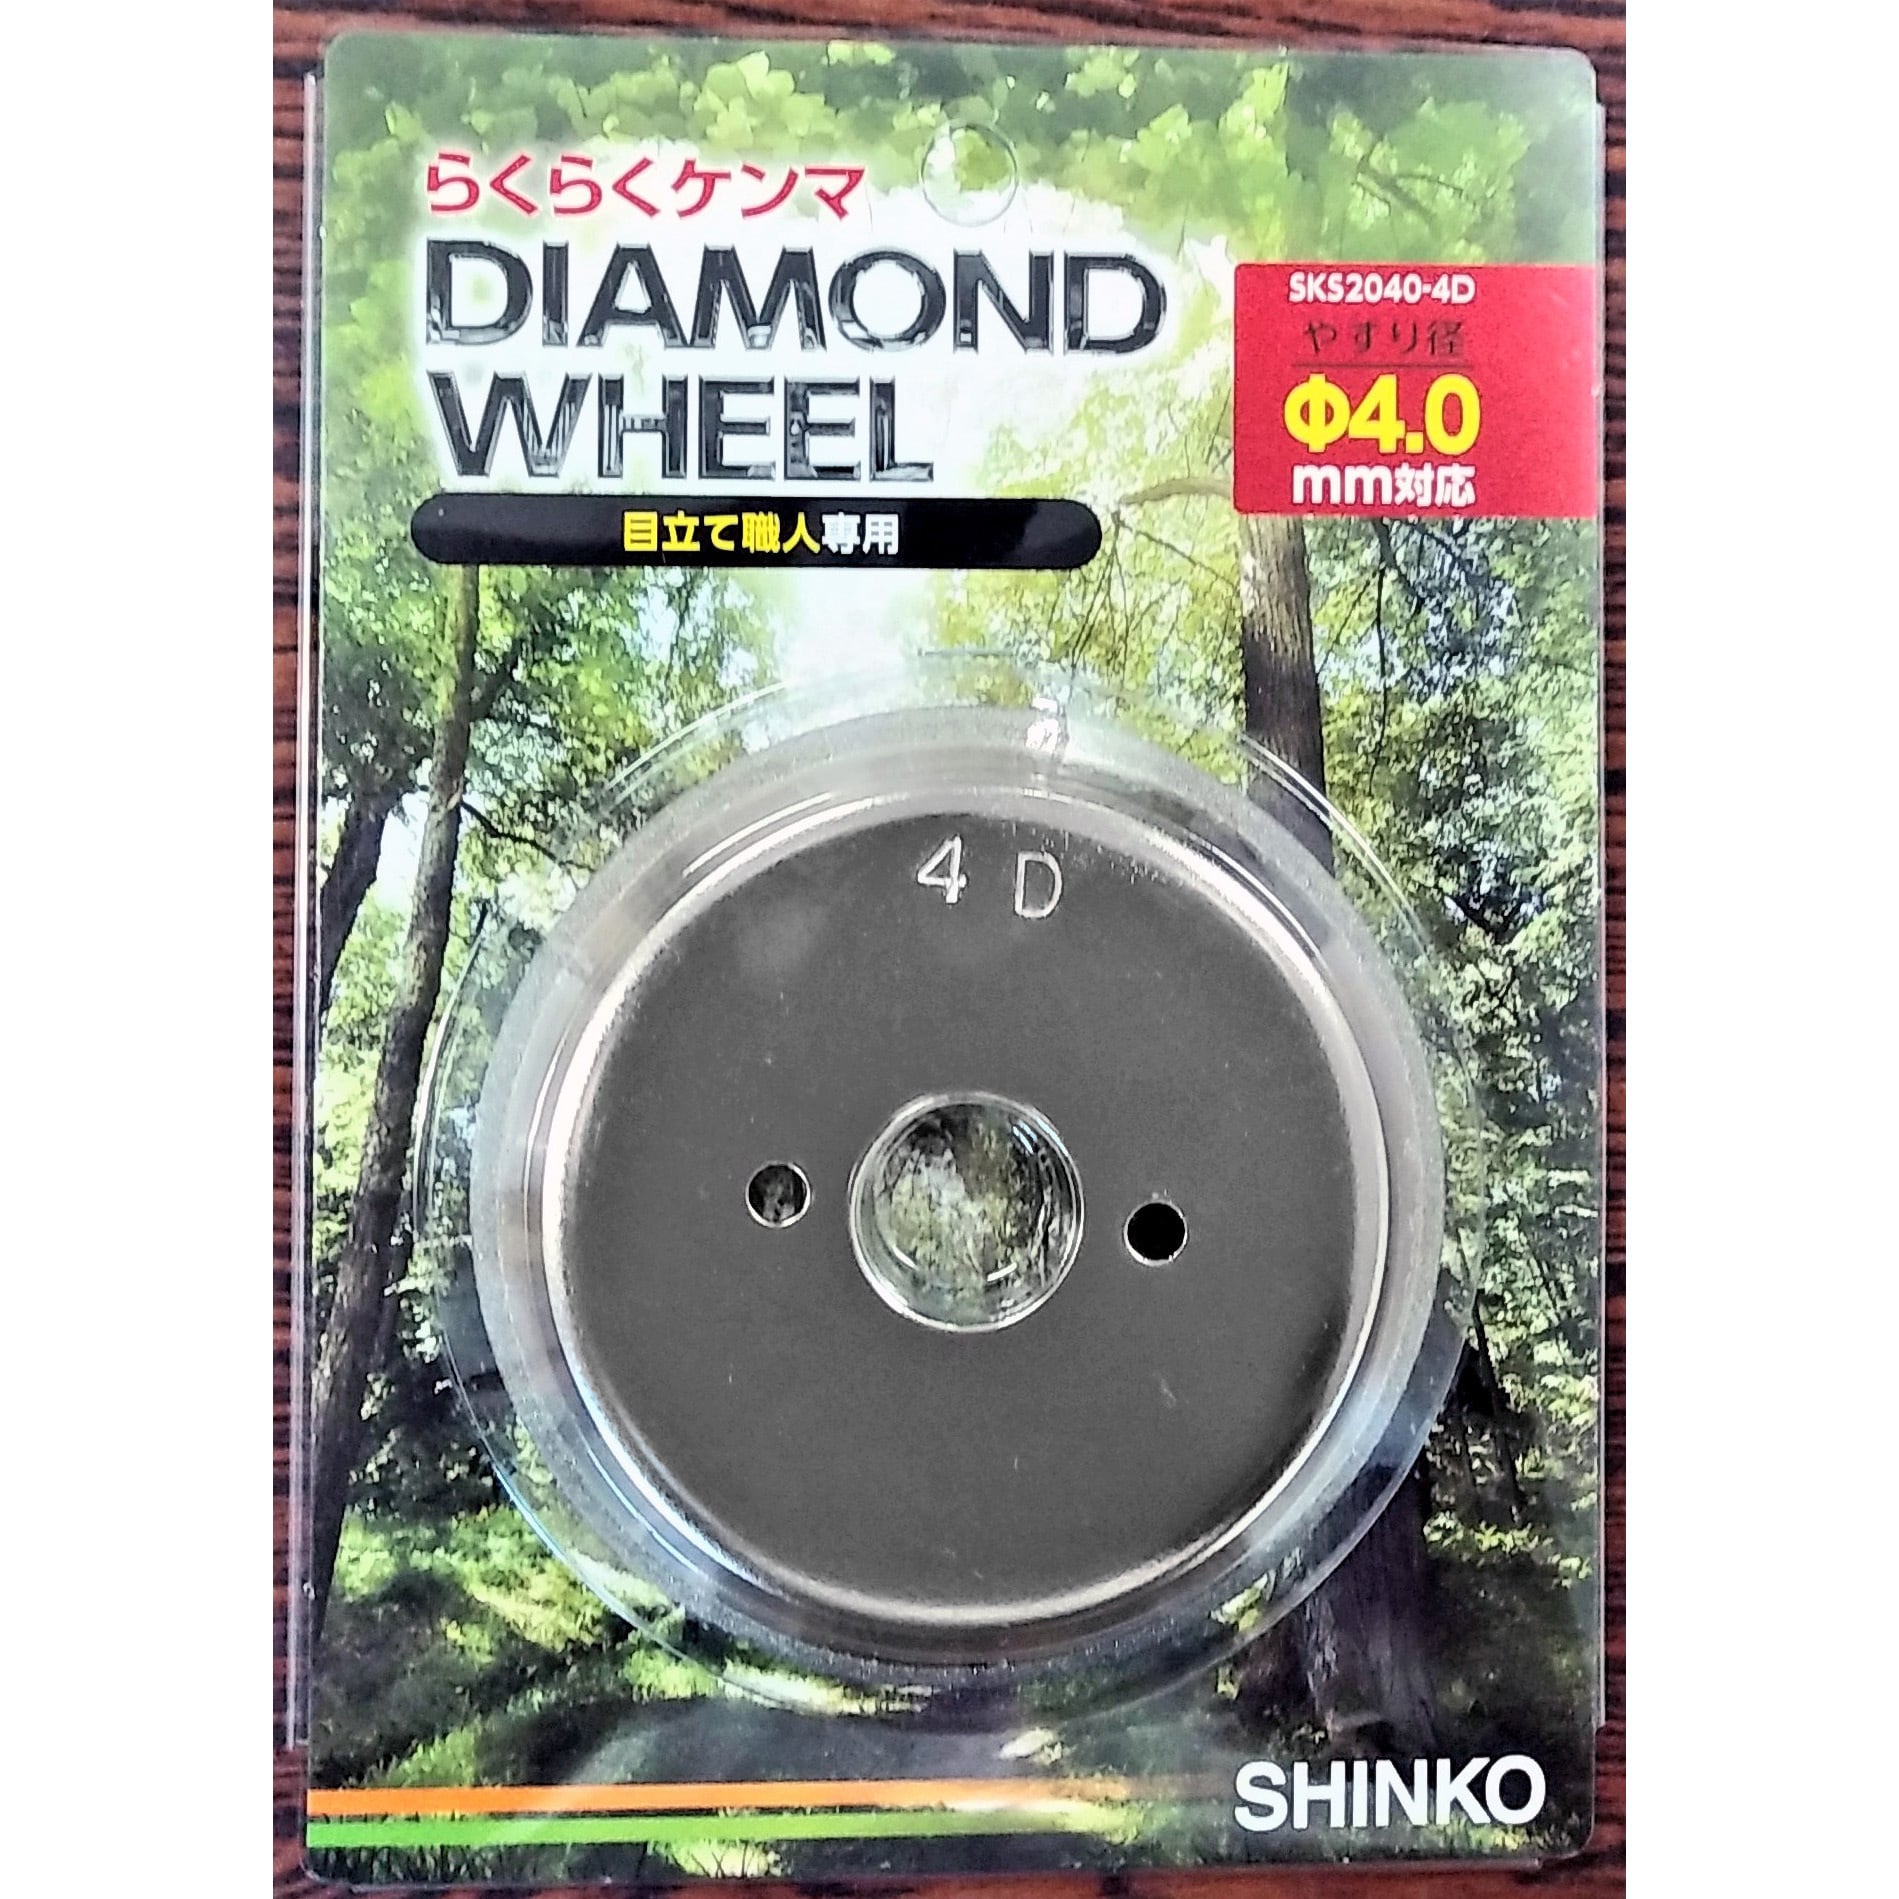 SKS-2040-4D(4.0mm用砥石) ダイヤモンドホイル 1個 新興工業 【通販 